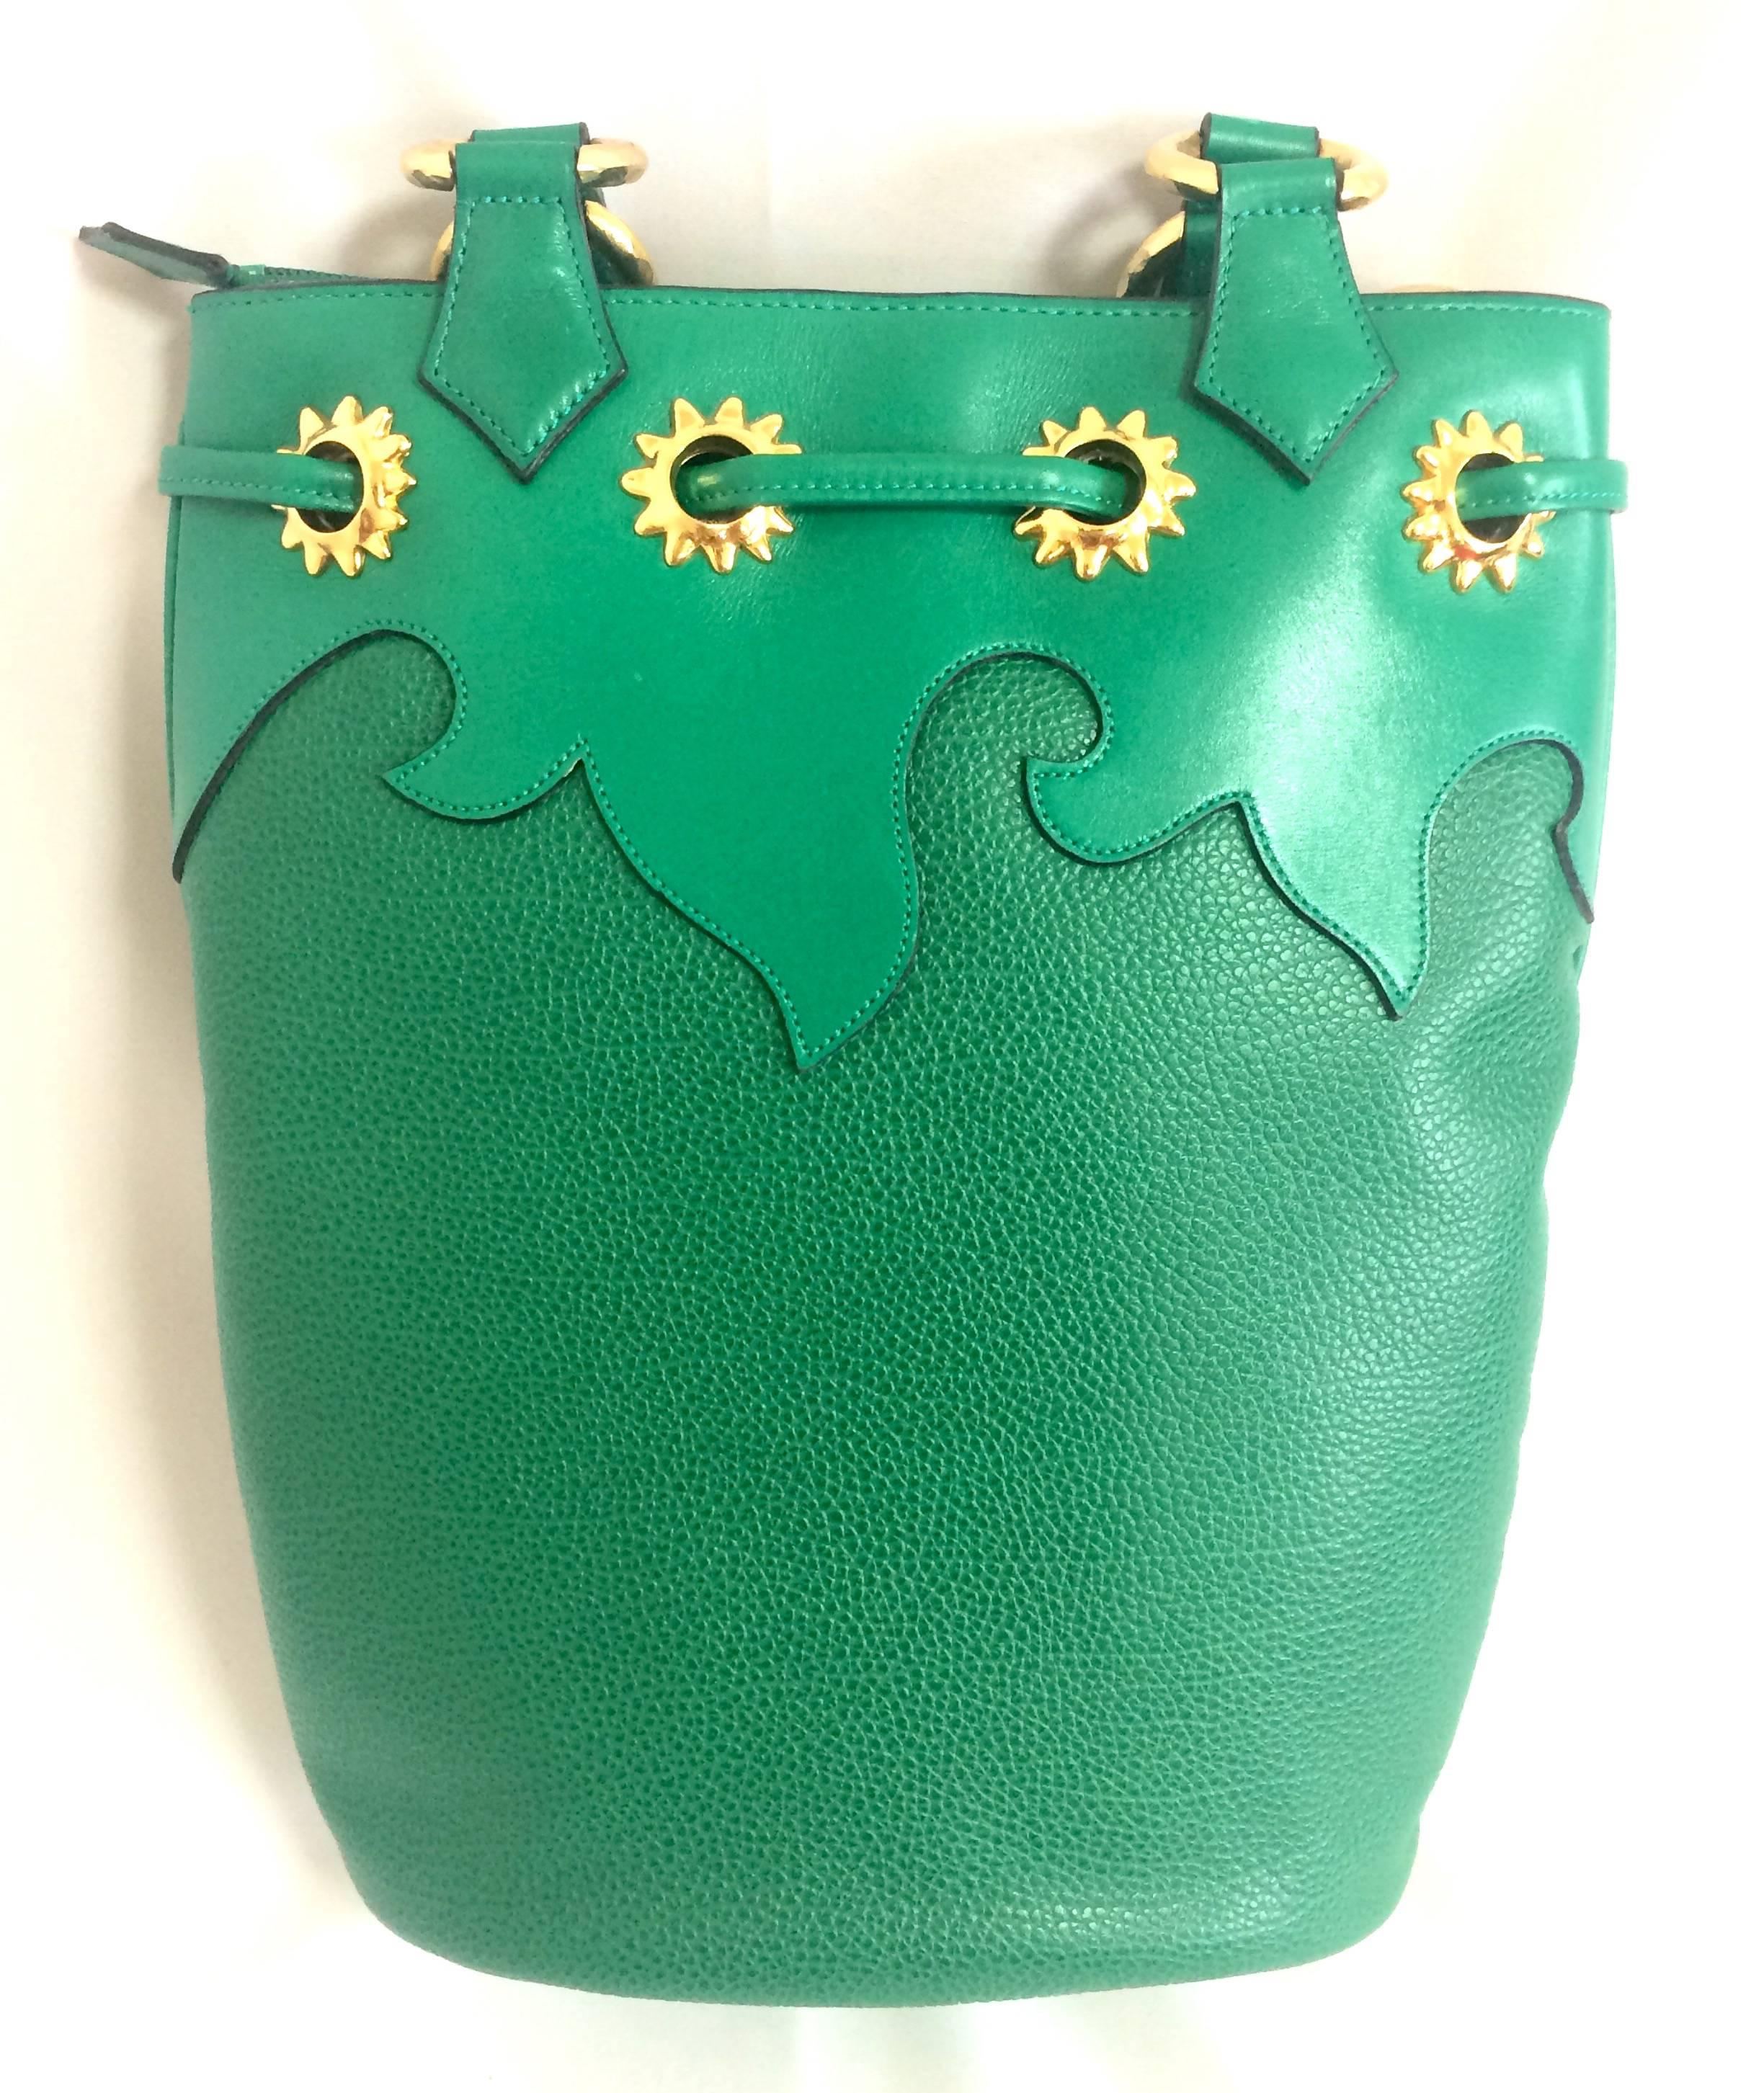 Green Vintage Christian Lacroix green hobo bucket shoulder bag with golden star motifs